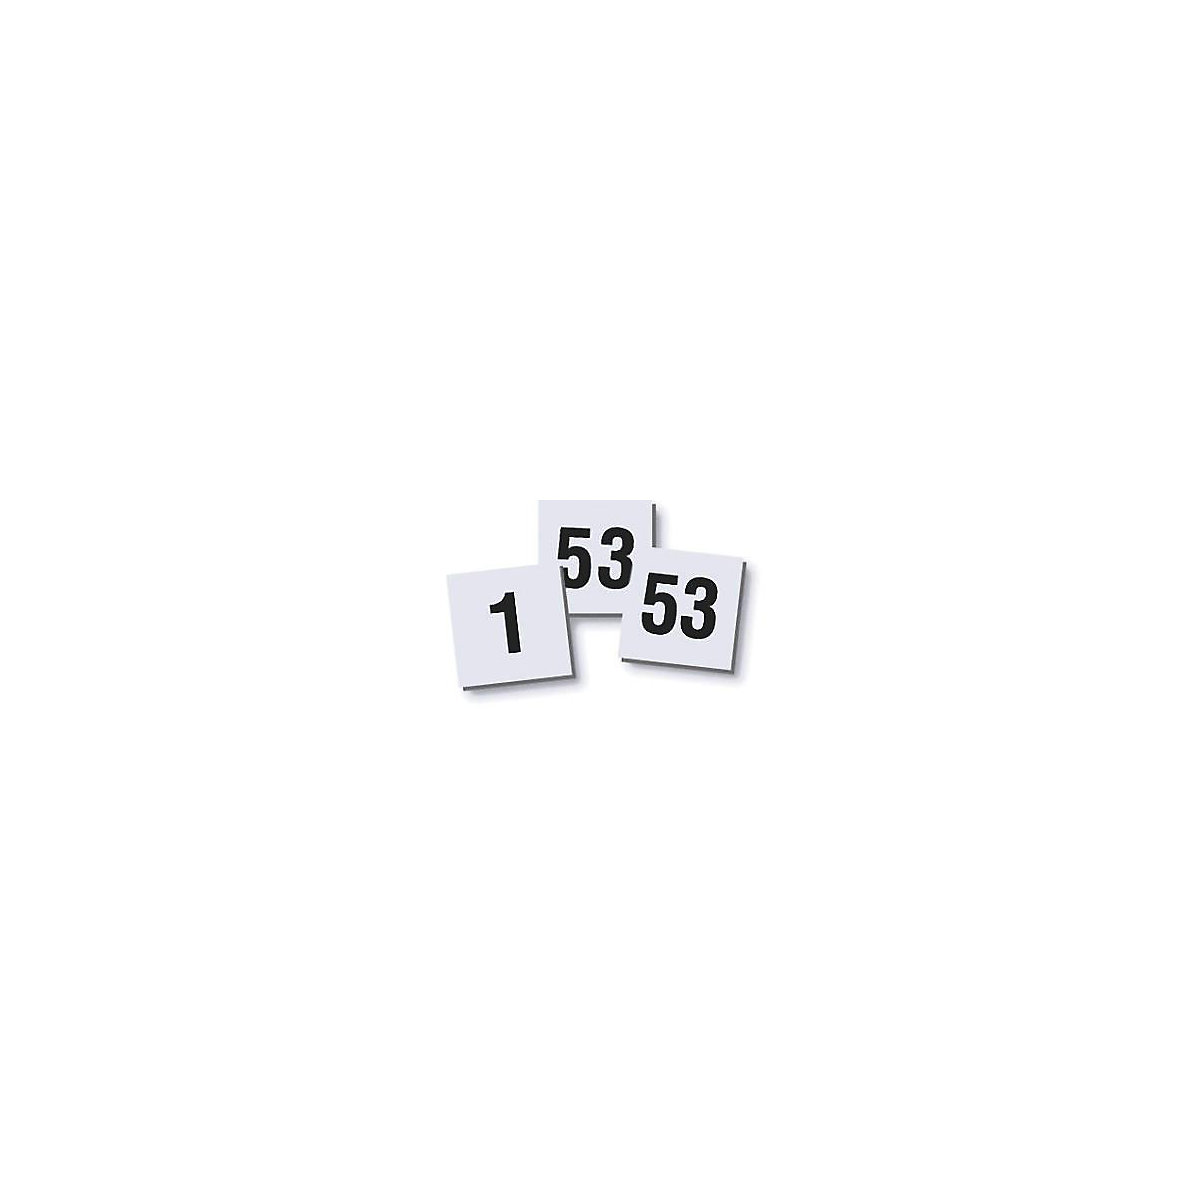 Komplet magnetov s številkami – magnetoplan, 10 x 10 mm, DE 2 kosa, številke 1 – 53-2